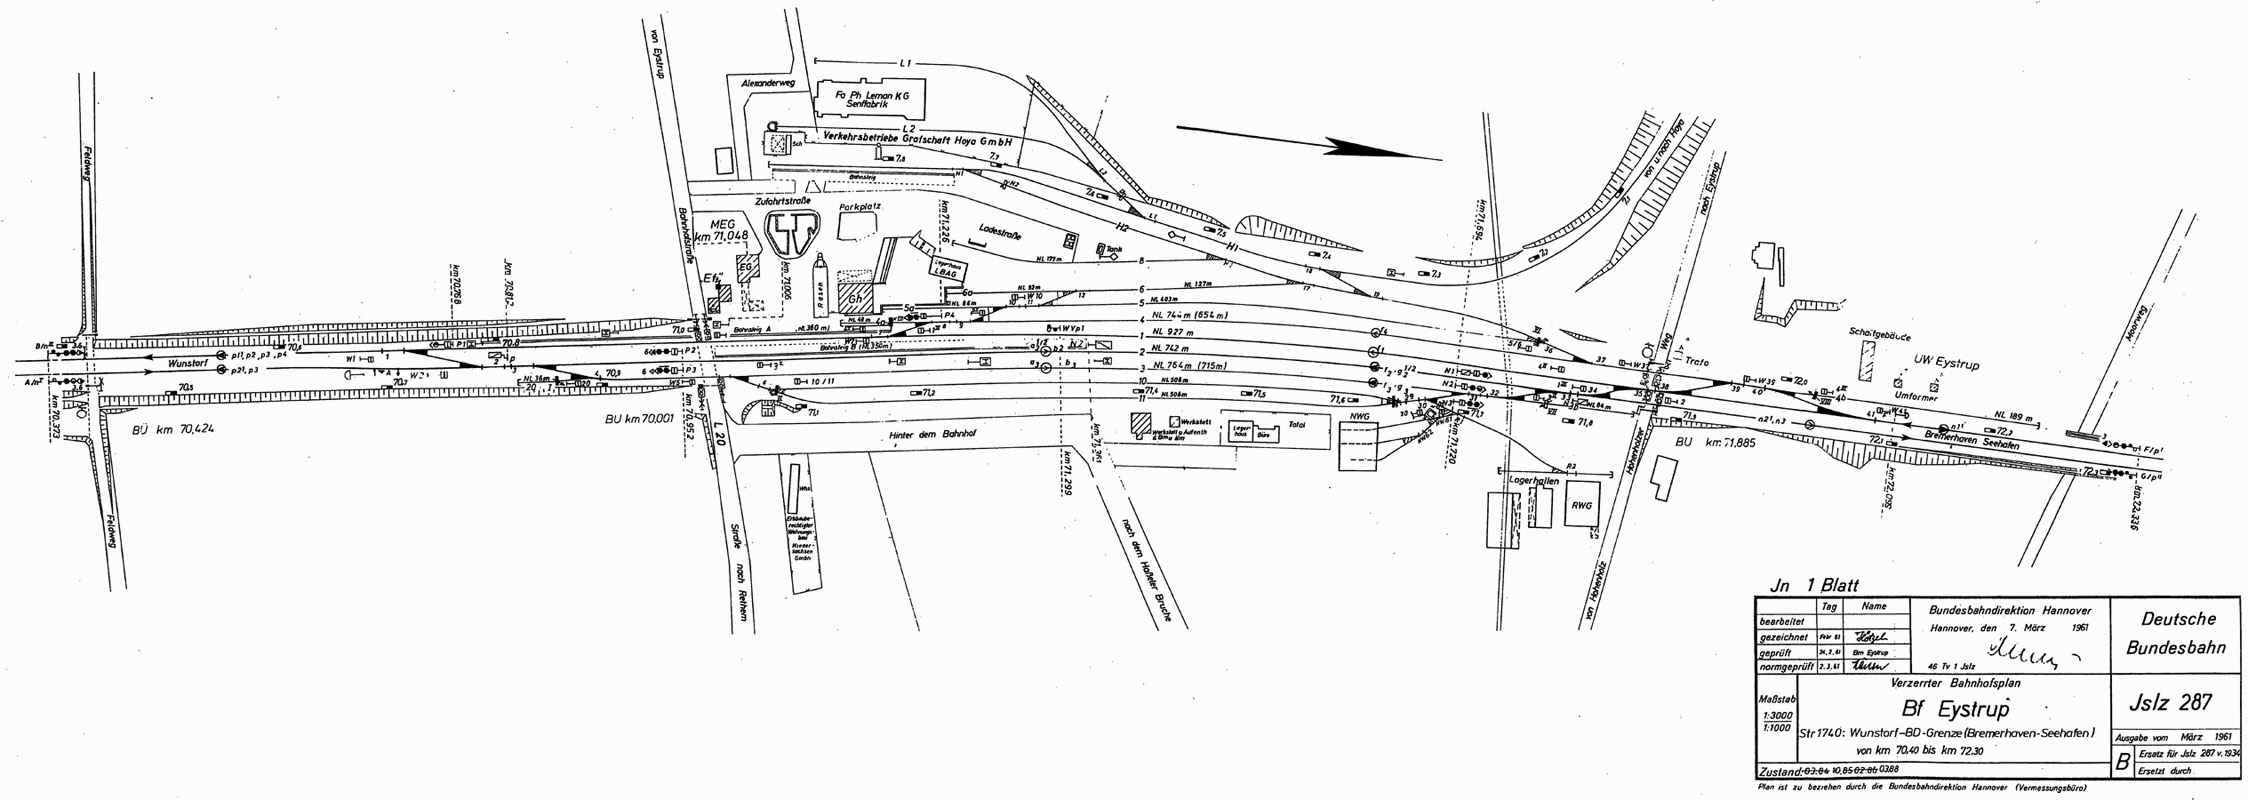 Gleisplan des Eystruper Bahnhofs von 1988